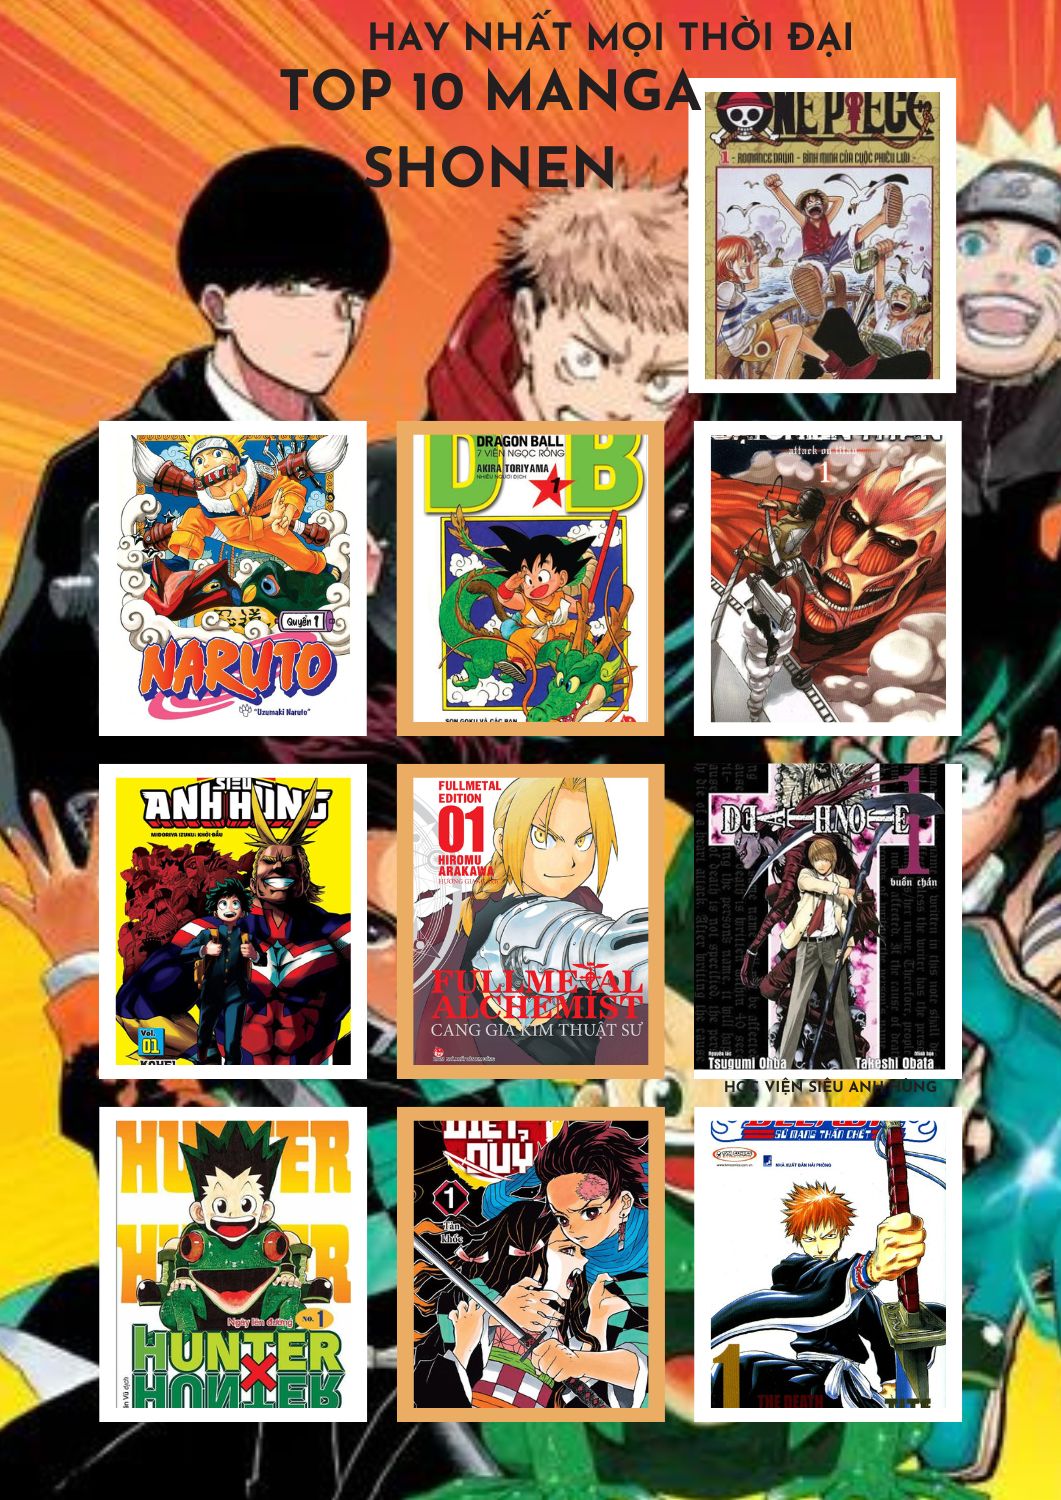 10 Manga Shonen Hay Nhất Mọi Thời Đại (Theo IGN)